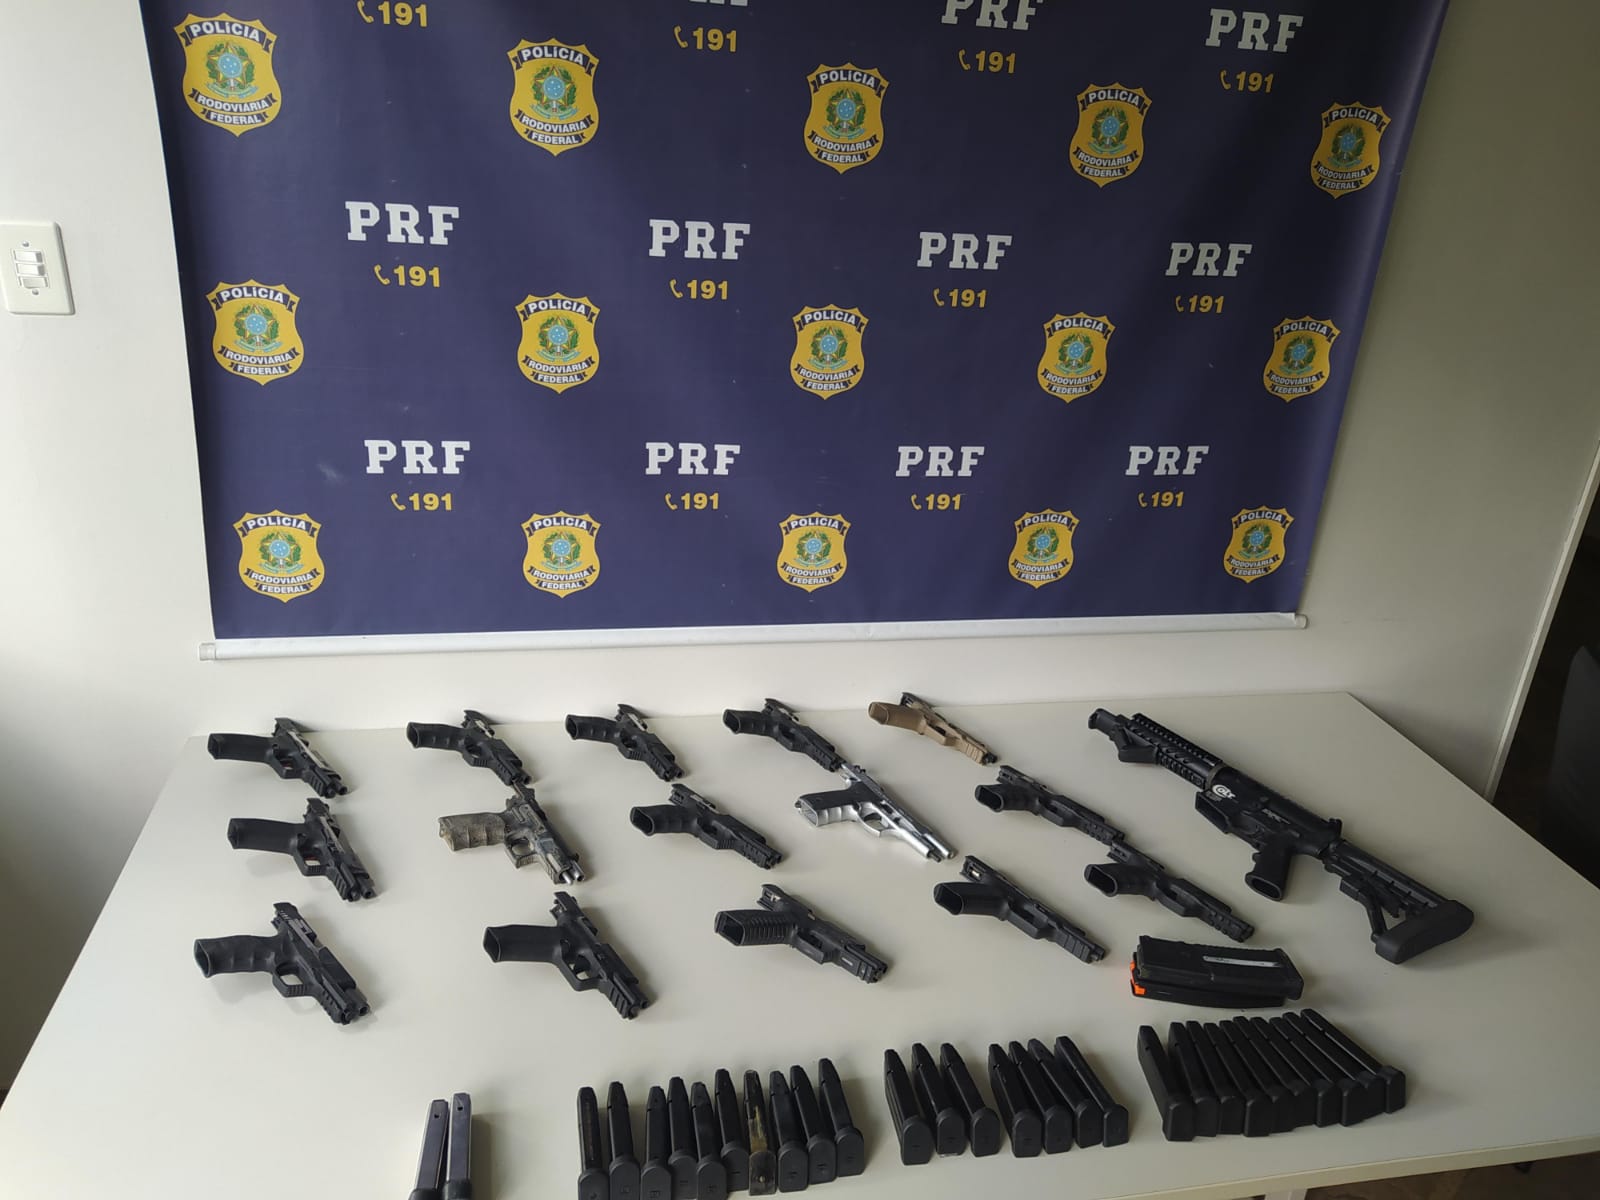 Homem de 35 anos foi detido por tráfico internacional de armas na BR 267, em Juiz de Fora (MG), transportando 15 pistolas e uma carabina, além de munições, vindo do Sul do Brasil